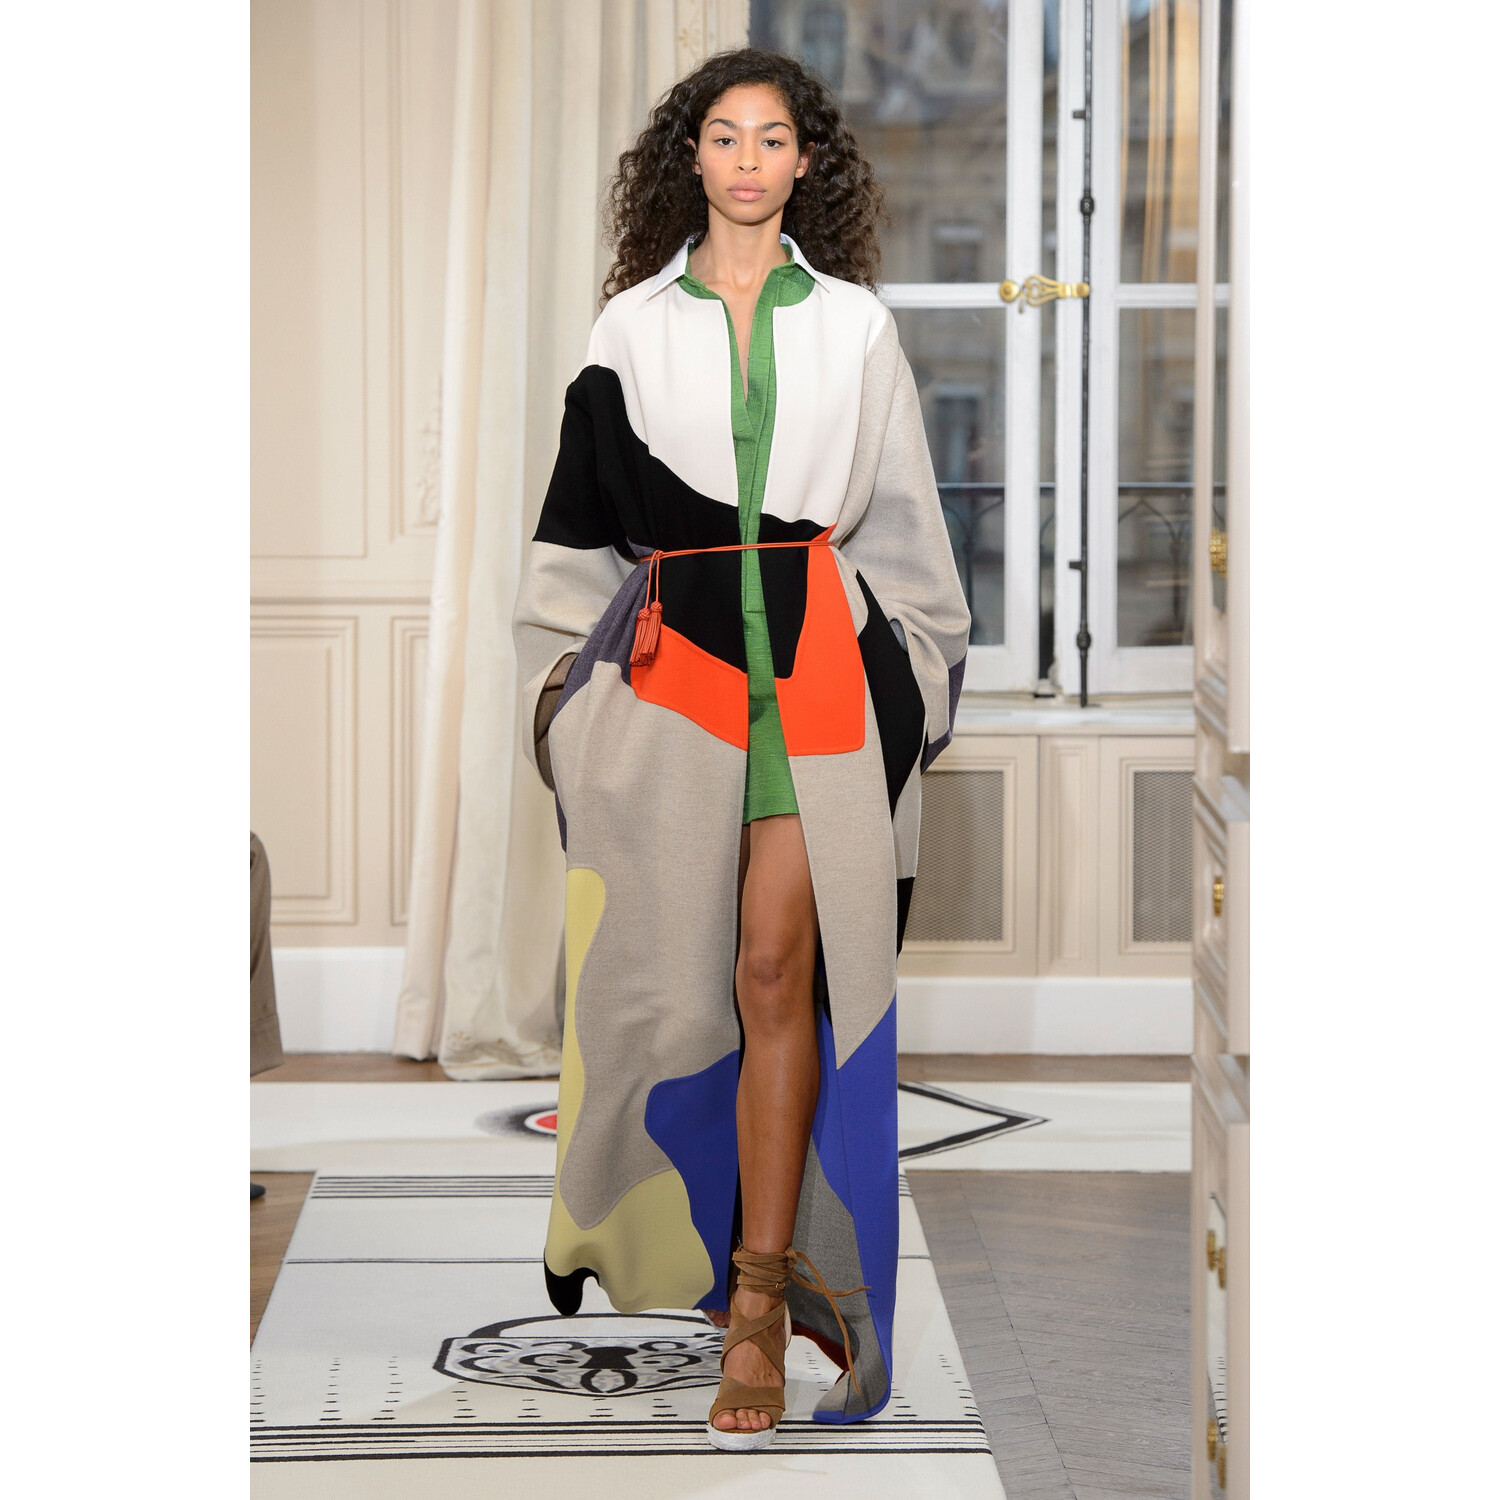 Фото Schiaparelli SPRING 2018 COUTURE Paris PFW коллекция fw 2018 Schiaparelli лето 2018 неделя высокой моды в Париже Mainstyles